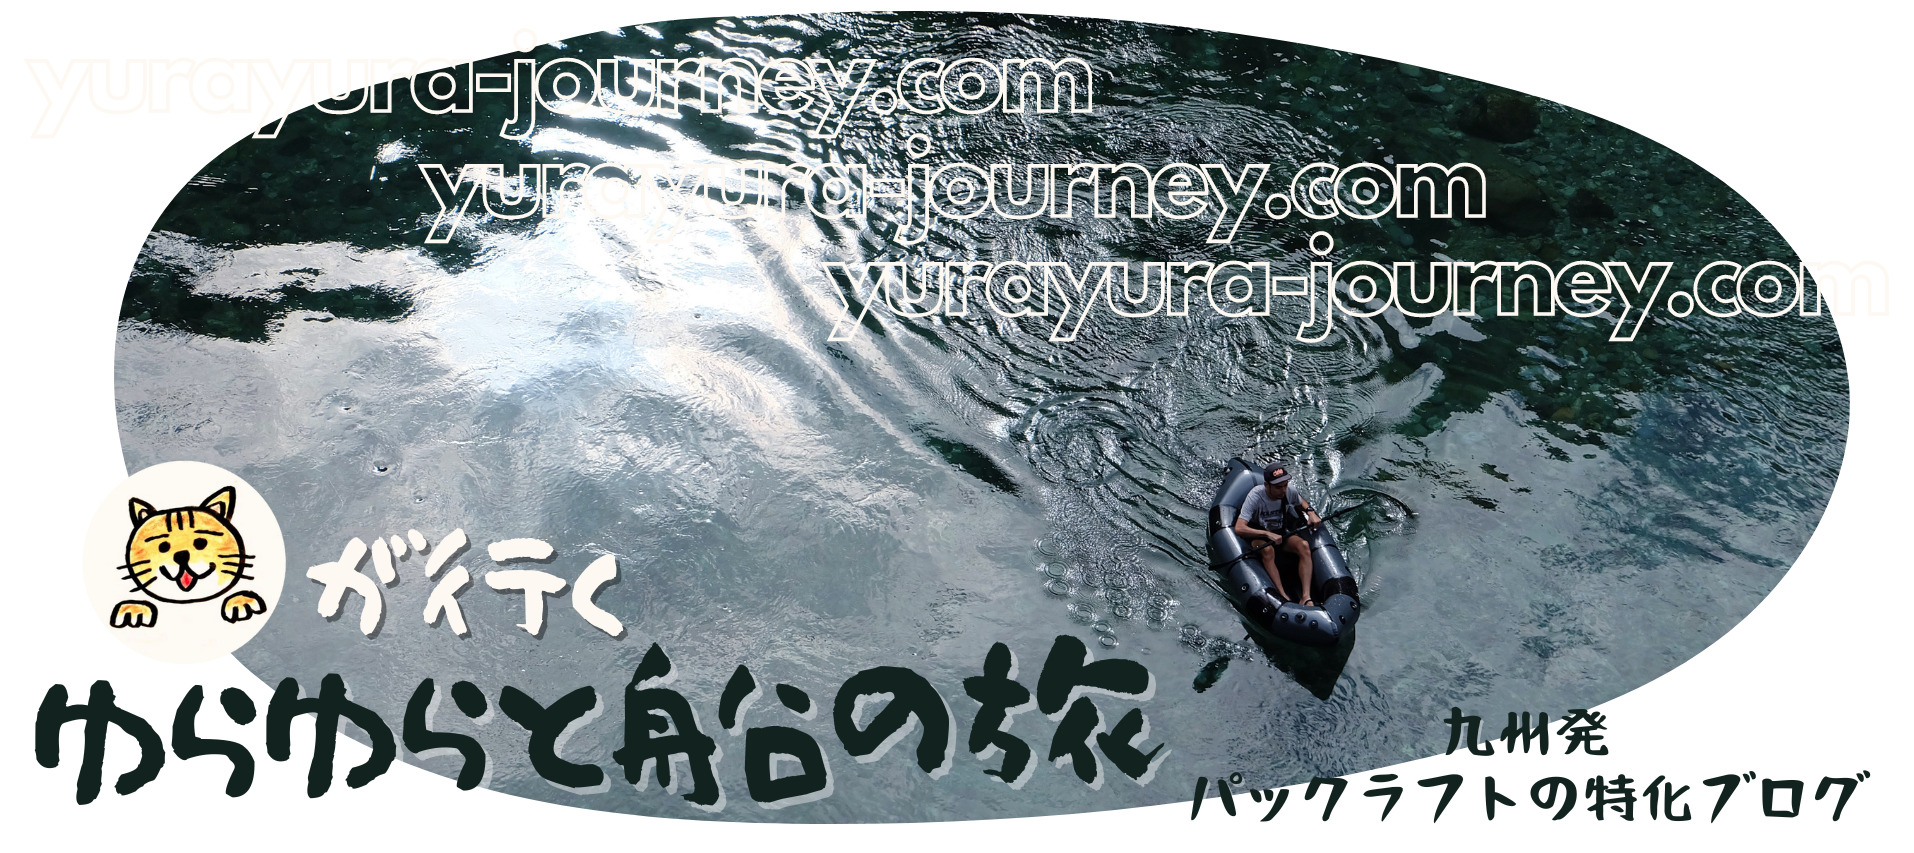 ゆらゆらと船の旅 -九州発パックラフトの特化ブログ-